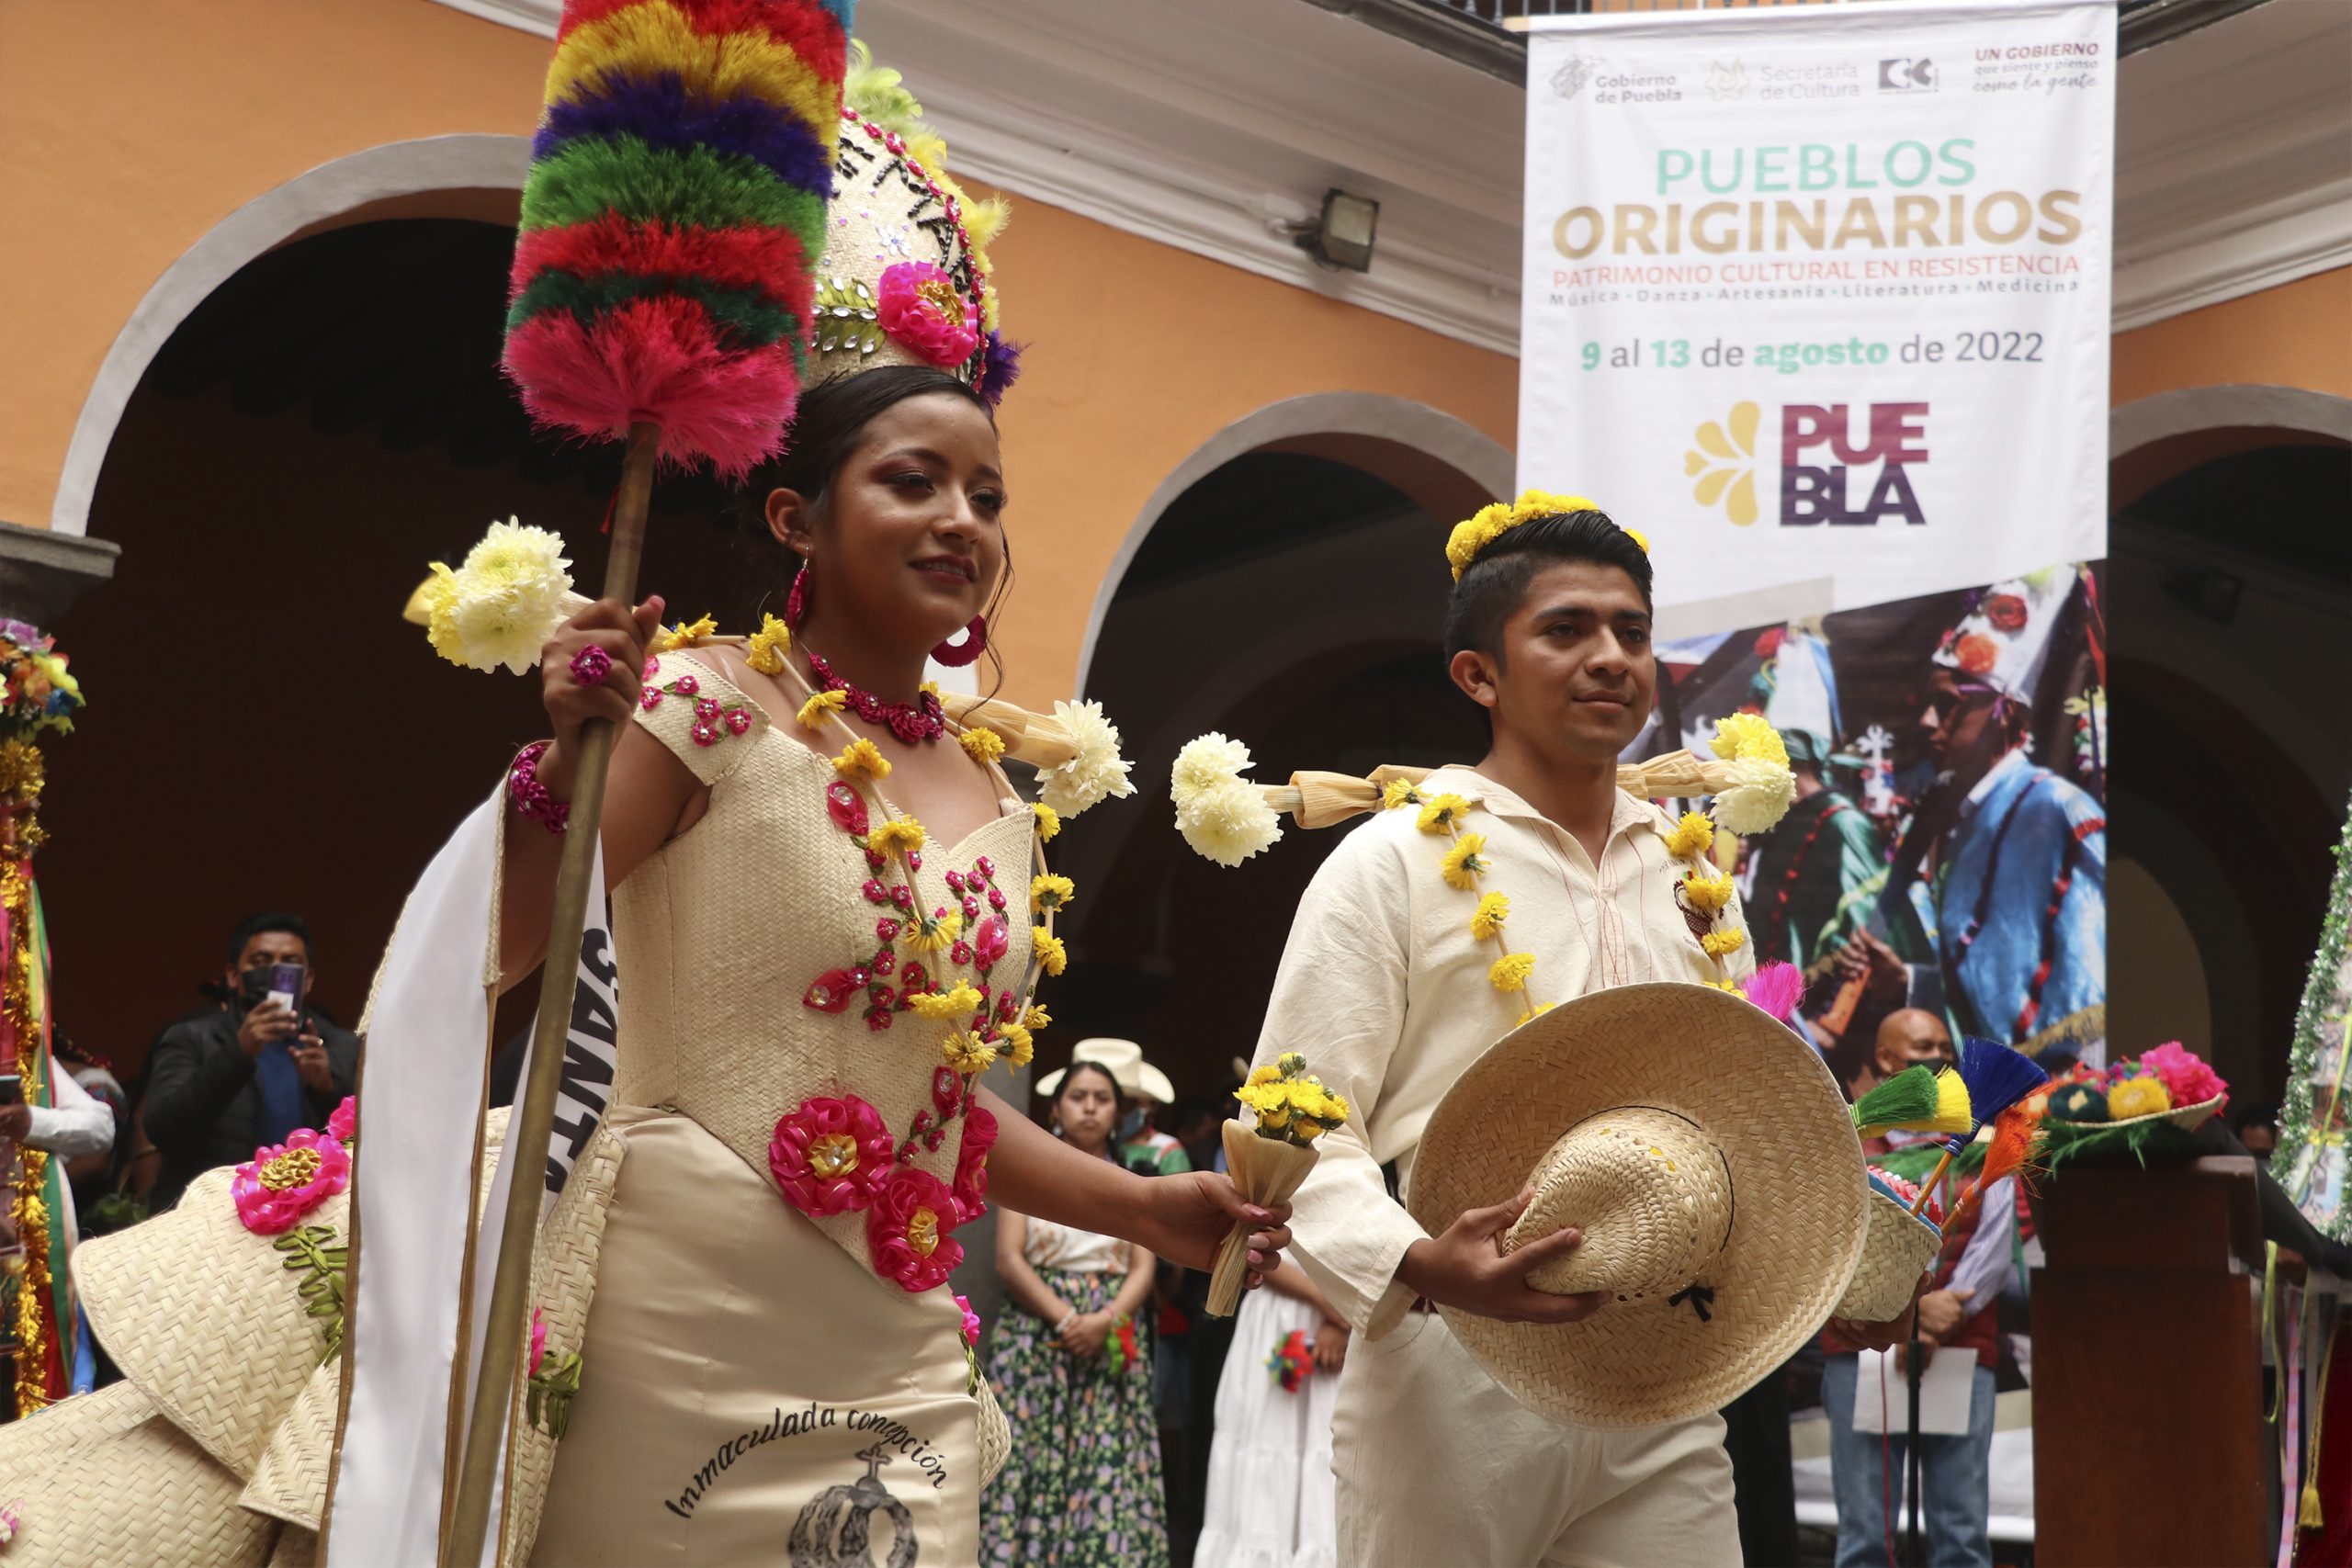 Con recorrido cultural tradicional, Puebla inicia programa “Pueblos Originarios”